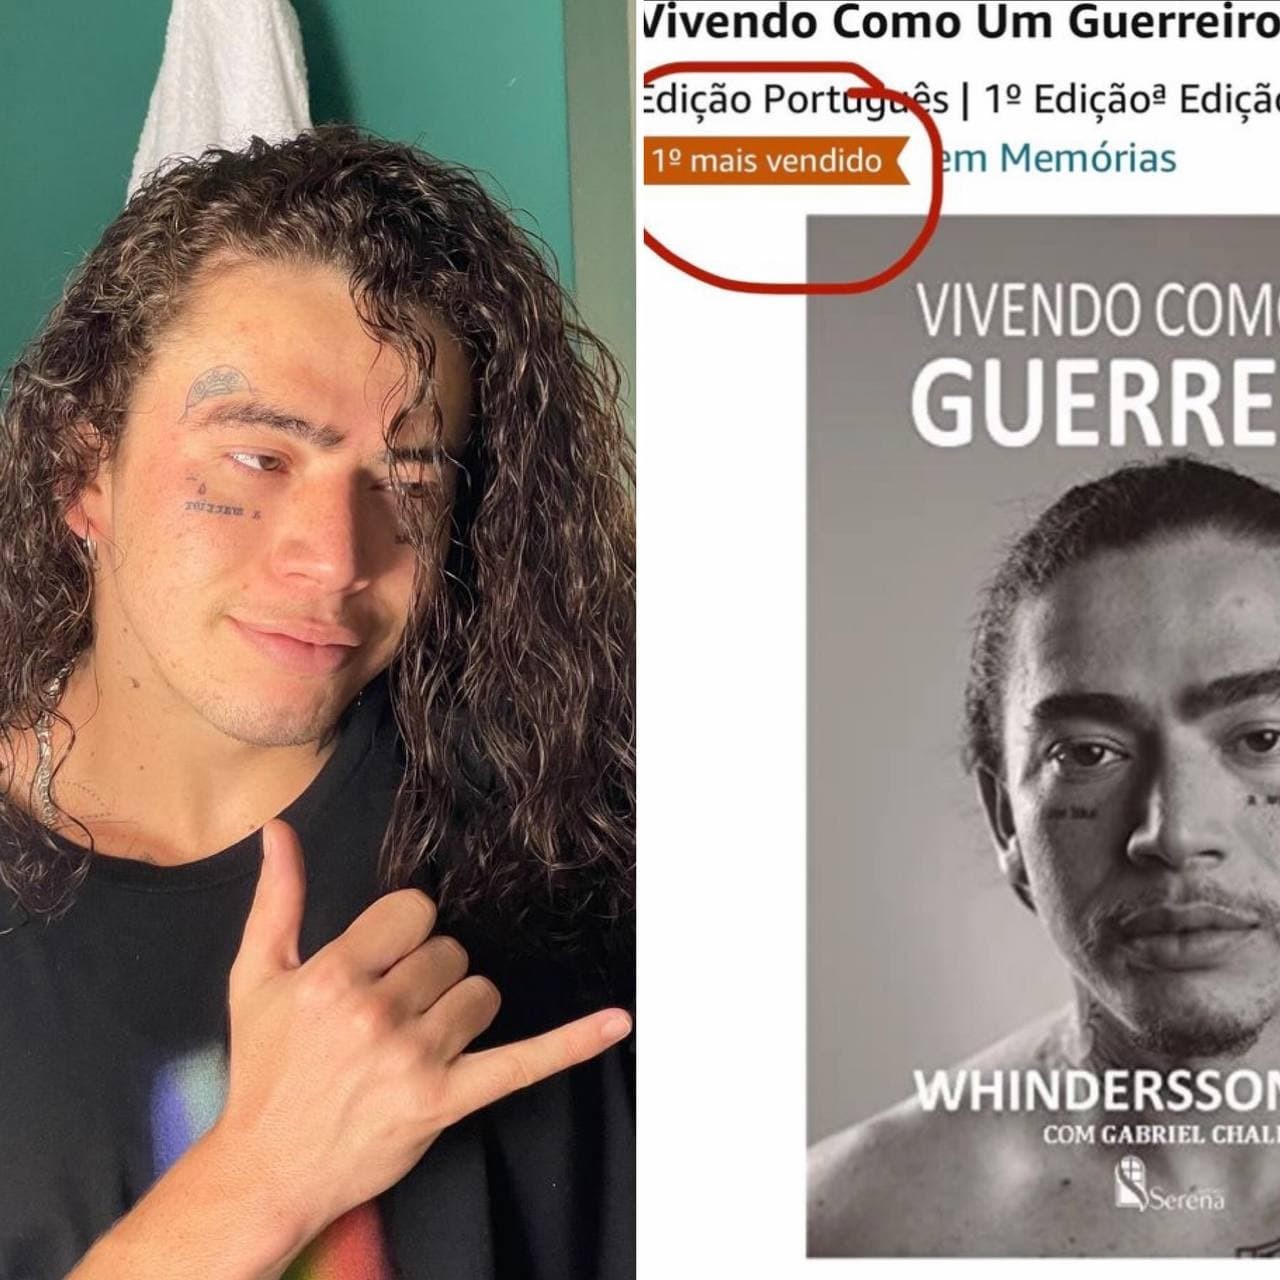 Whindersson Nunes comemora sucesso e livro (Foto: Reprodução / Instagram)